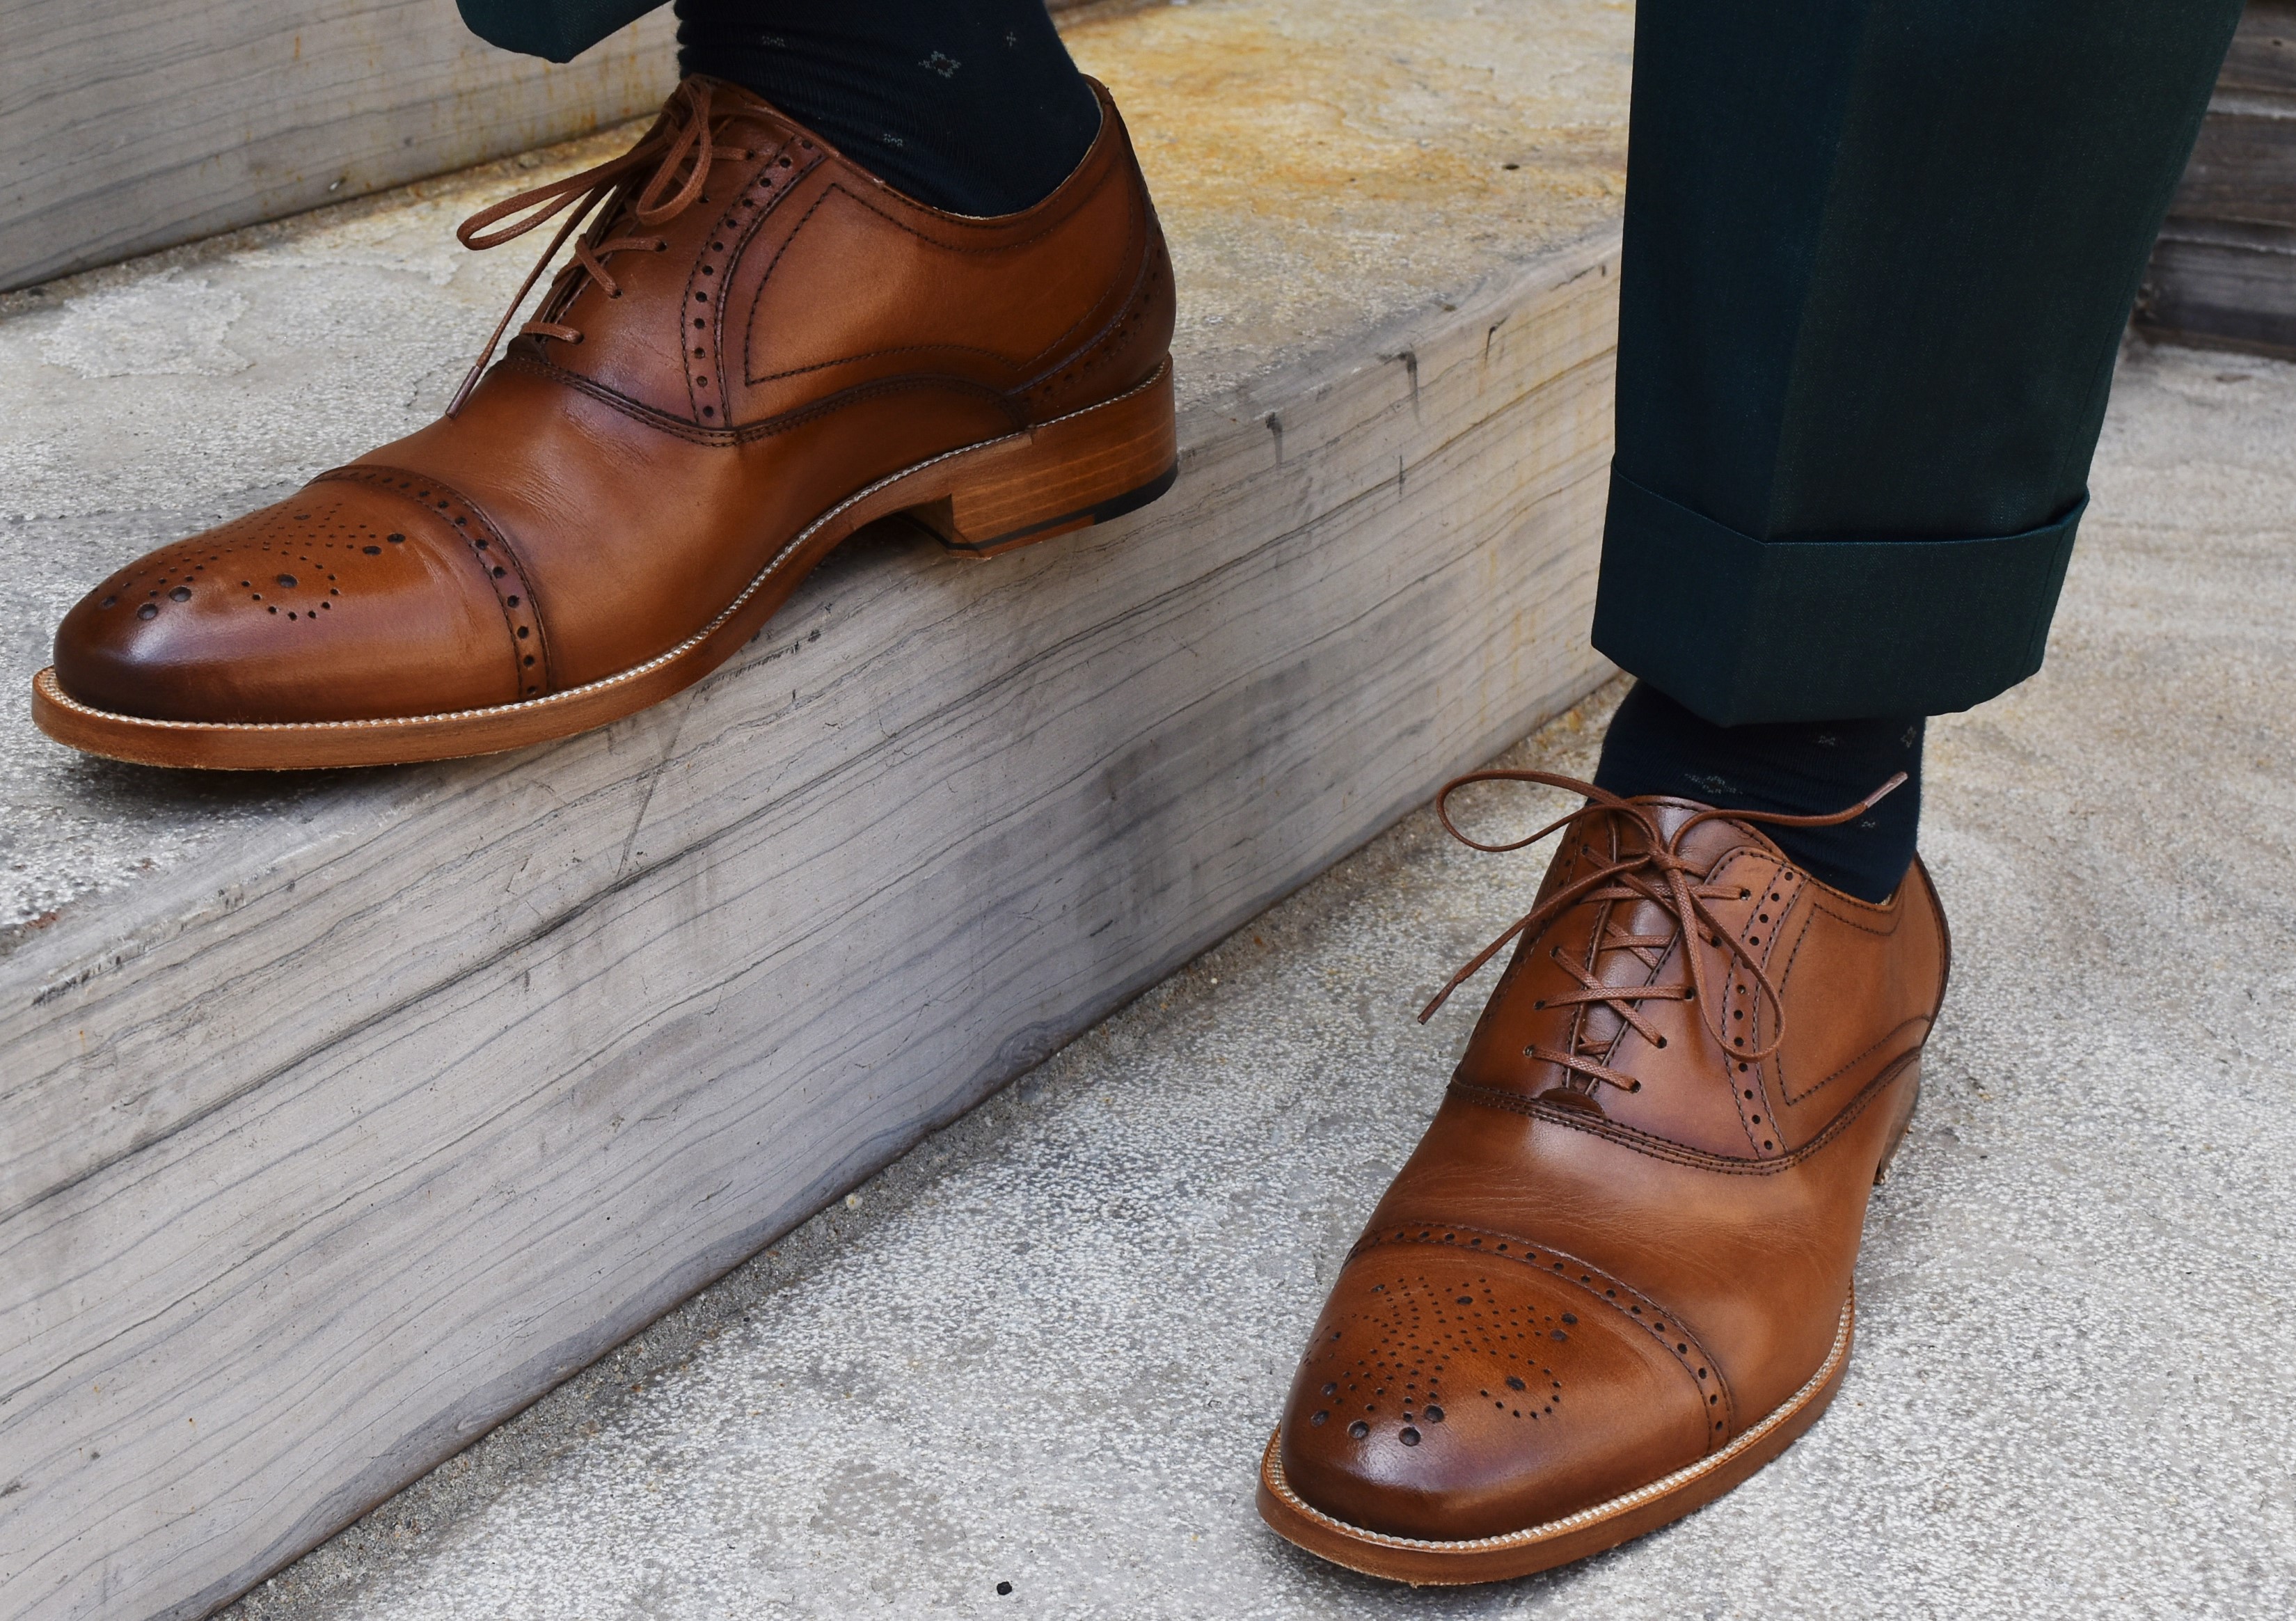 Fall Footwear Trend: Tan Leather | Men's Style Pro | Men's Style Blog ...